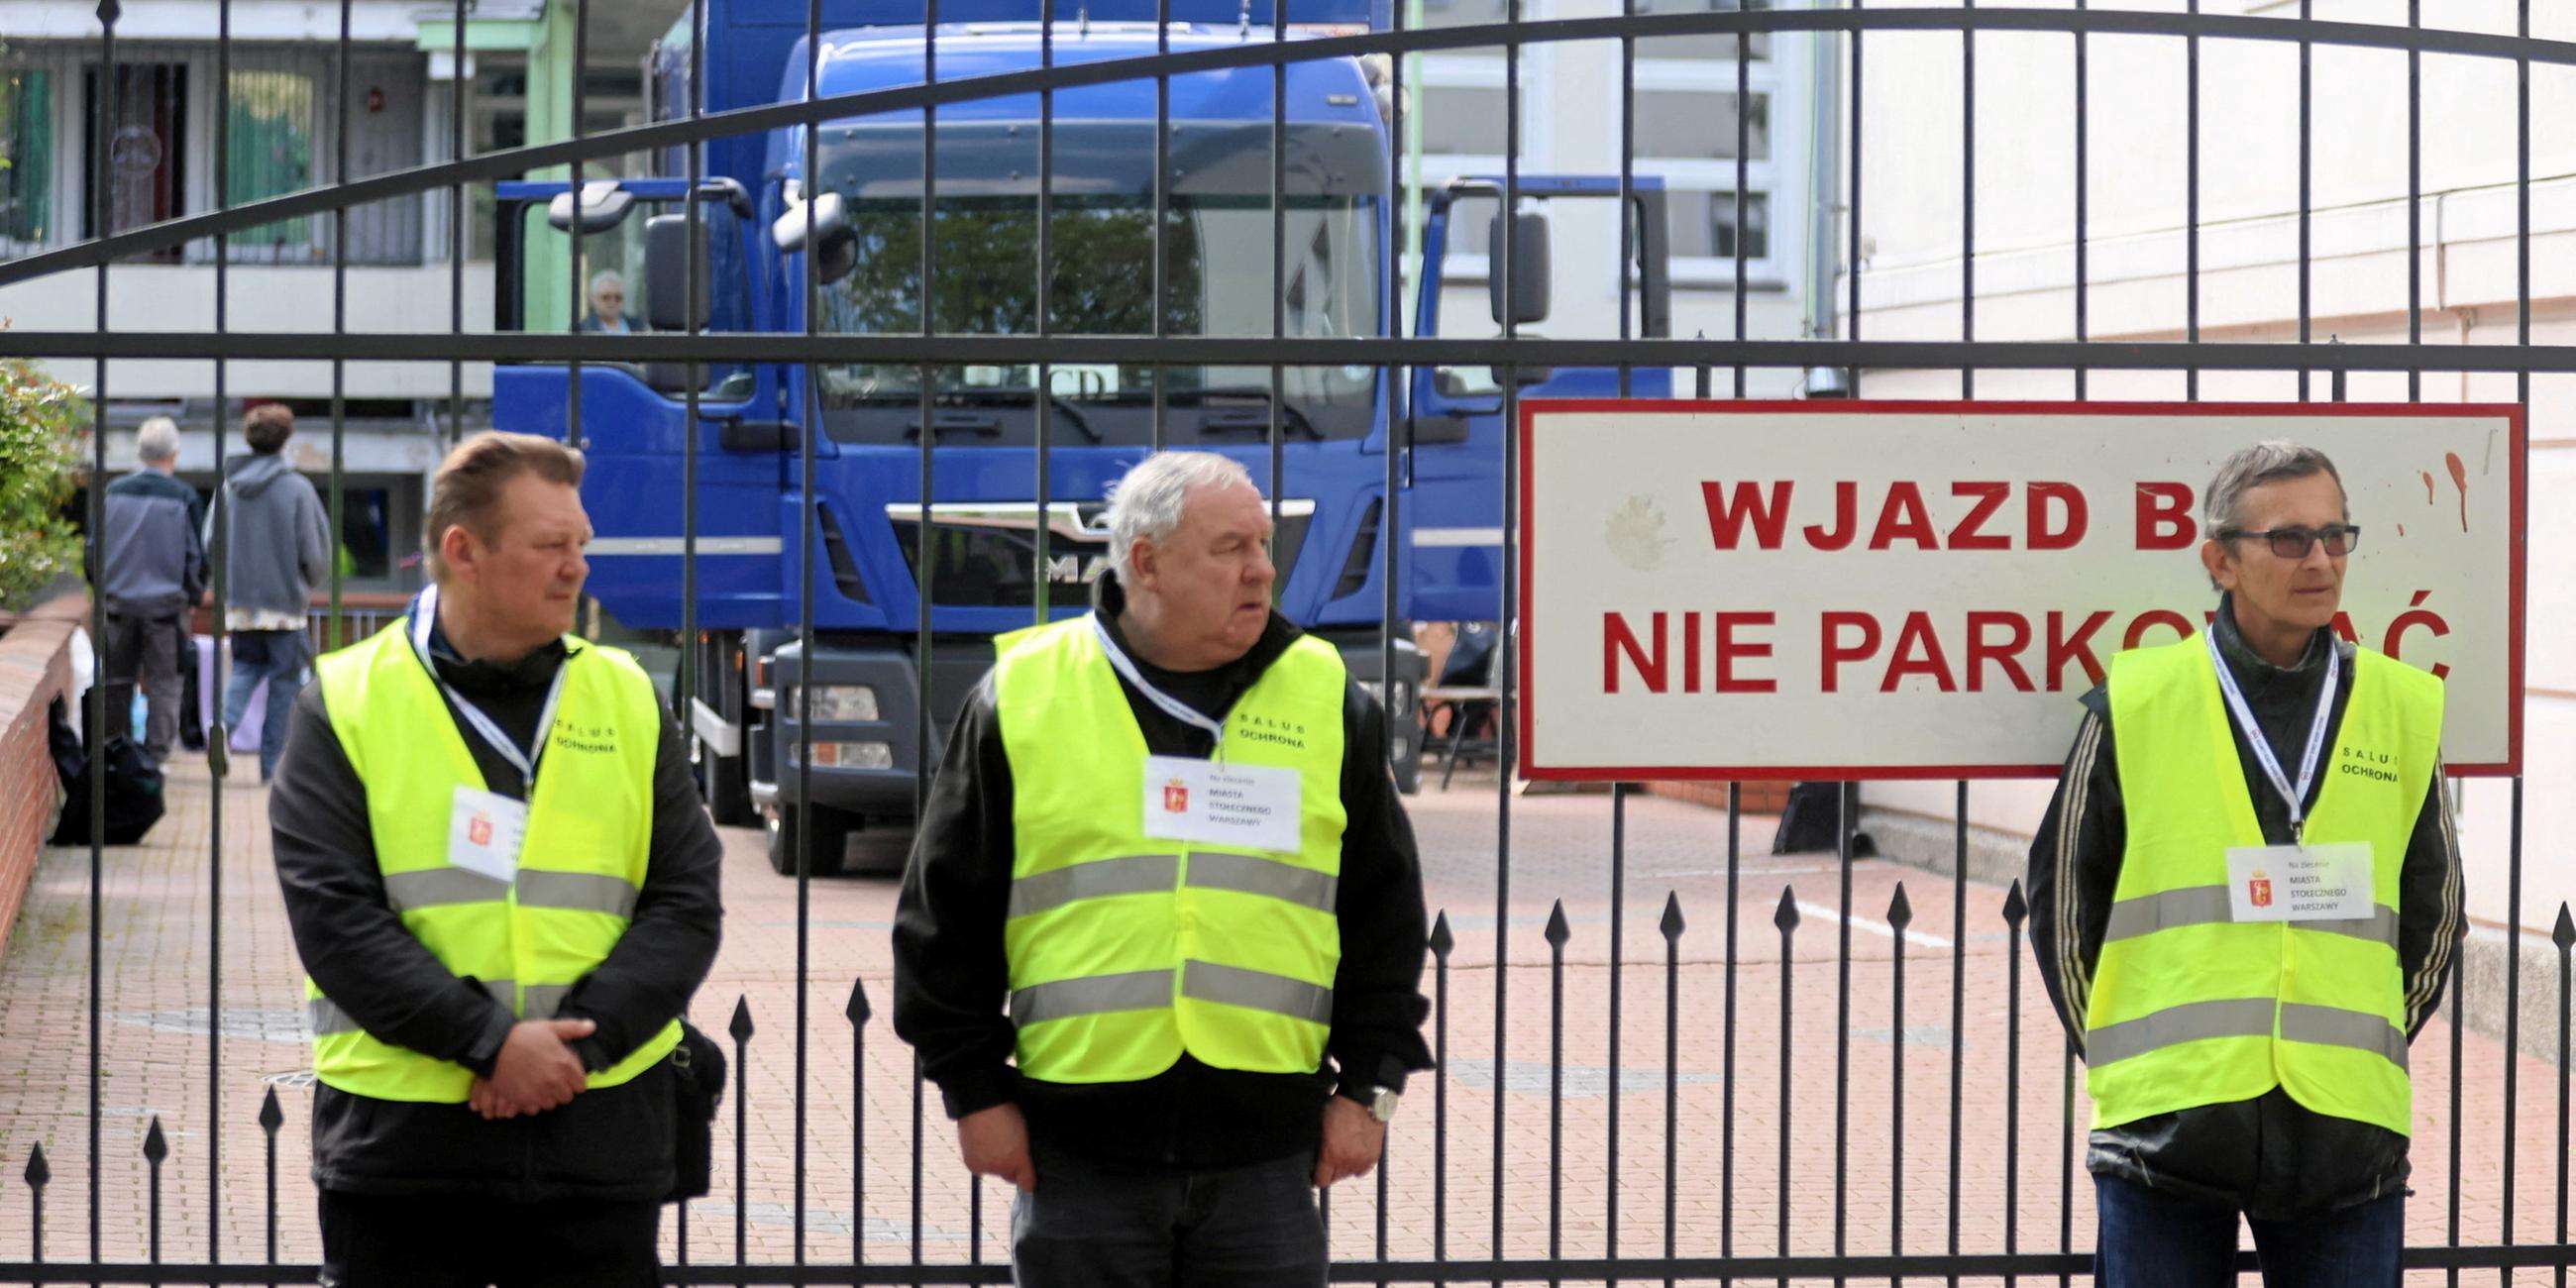 Sicherheitspersonal vor Warschauer Schule